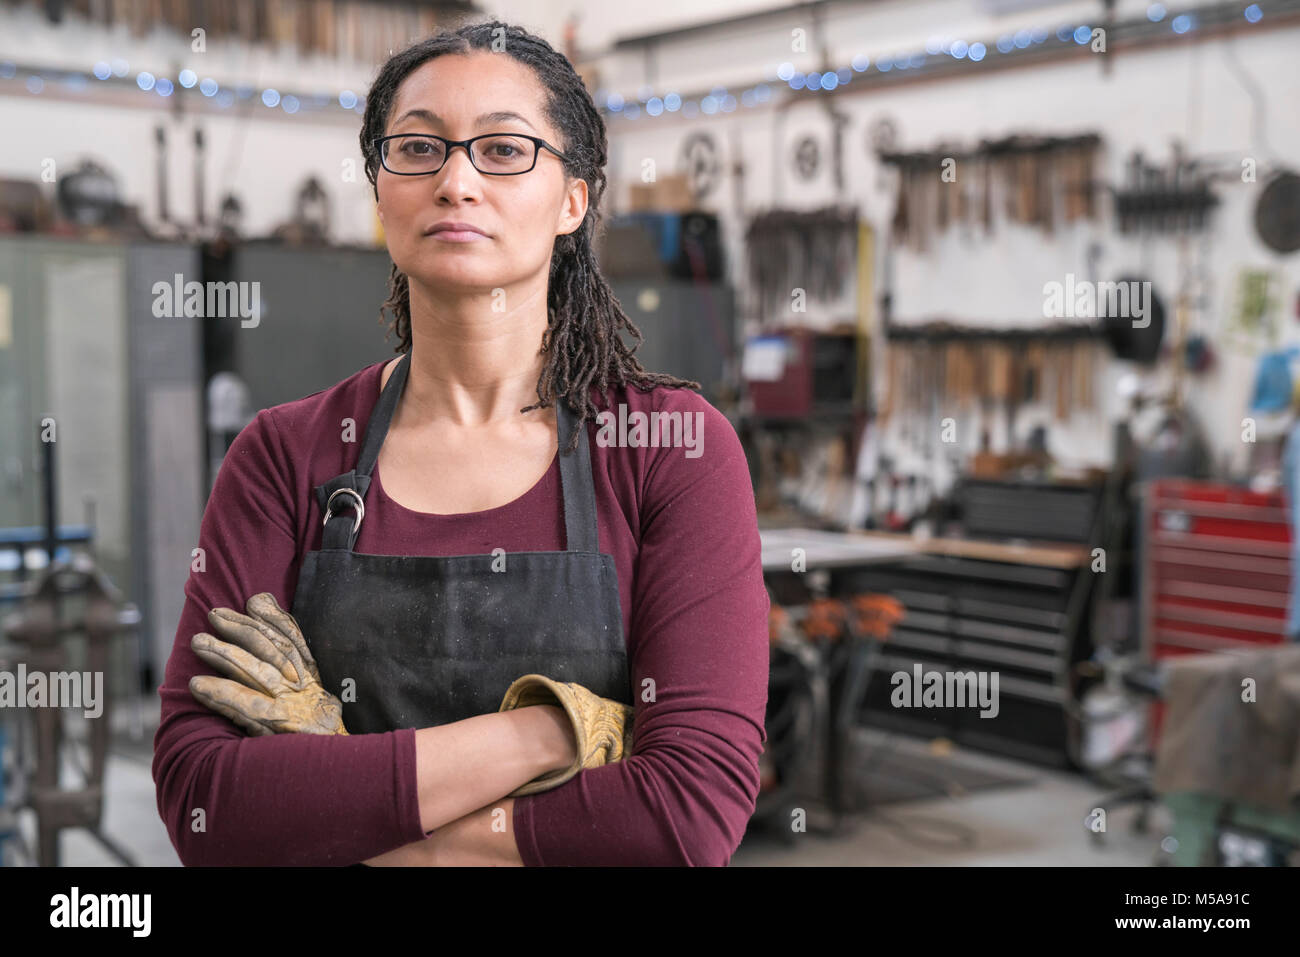 Femme avec les cheveux bruns portant des lunettes et tablier, debout dans l'atelier de la maison, les bras croisés, regardant la caméra. Banque D'Images